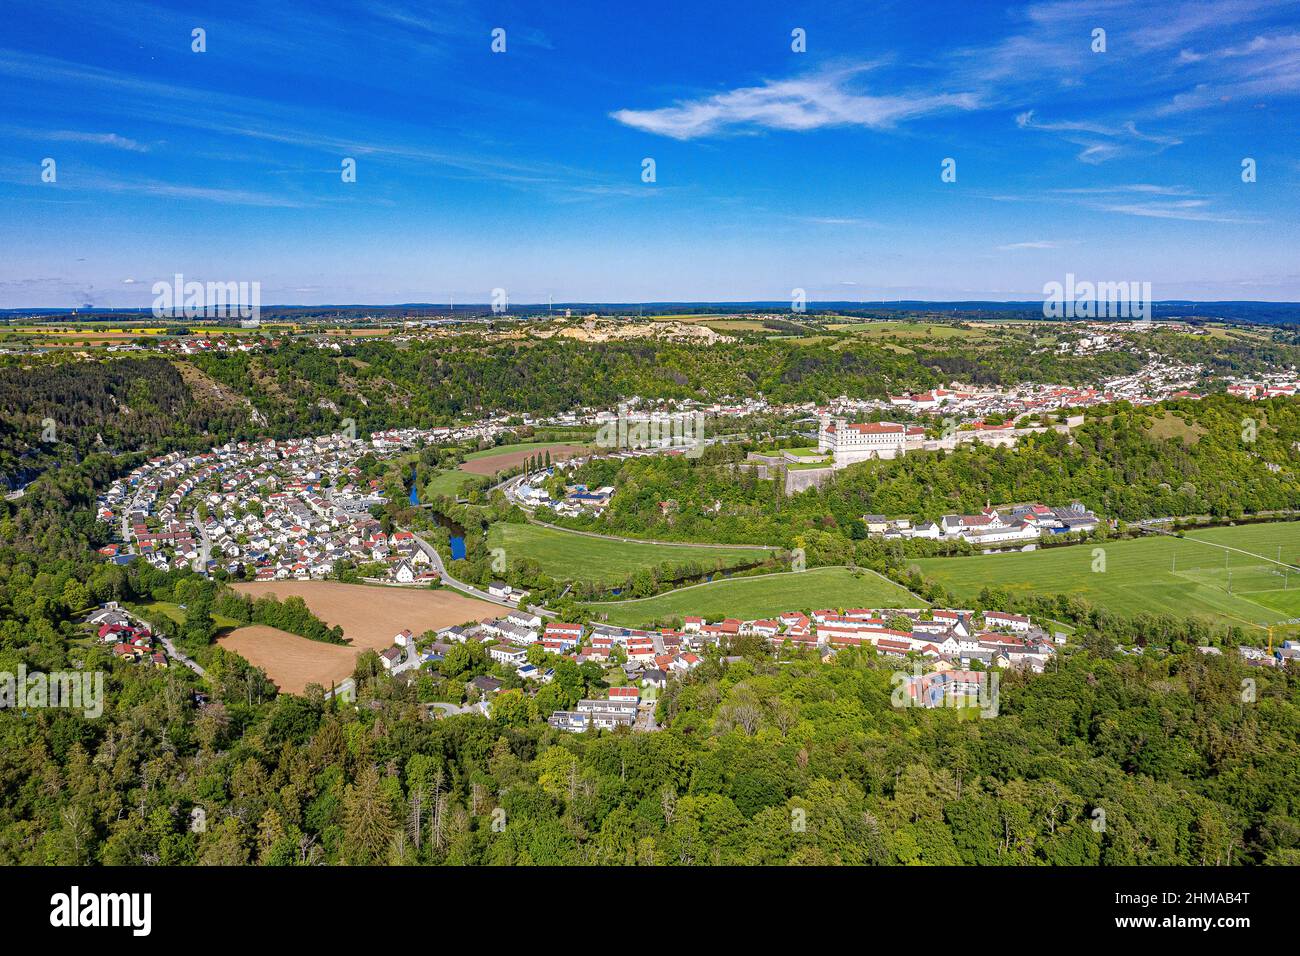 Luftbild von Eichstätt im Naturpark Altmühltal an einem heißen Tag im Sommer Foto de stock